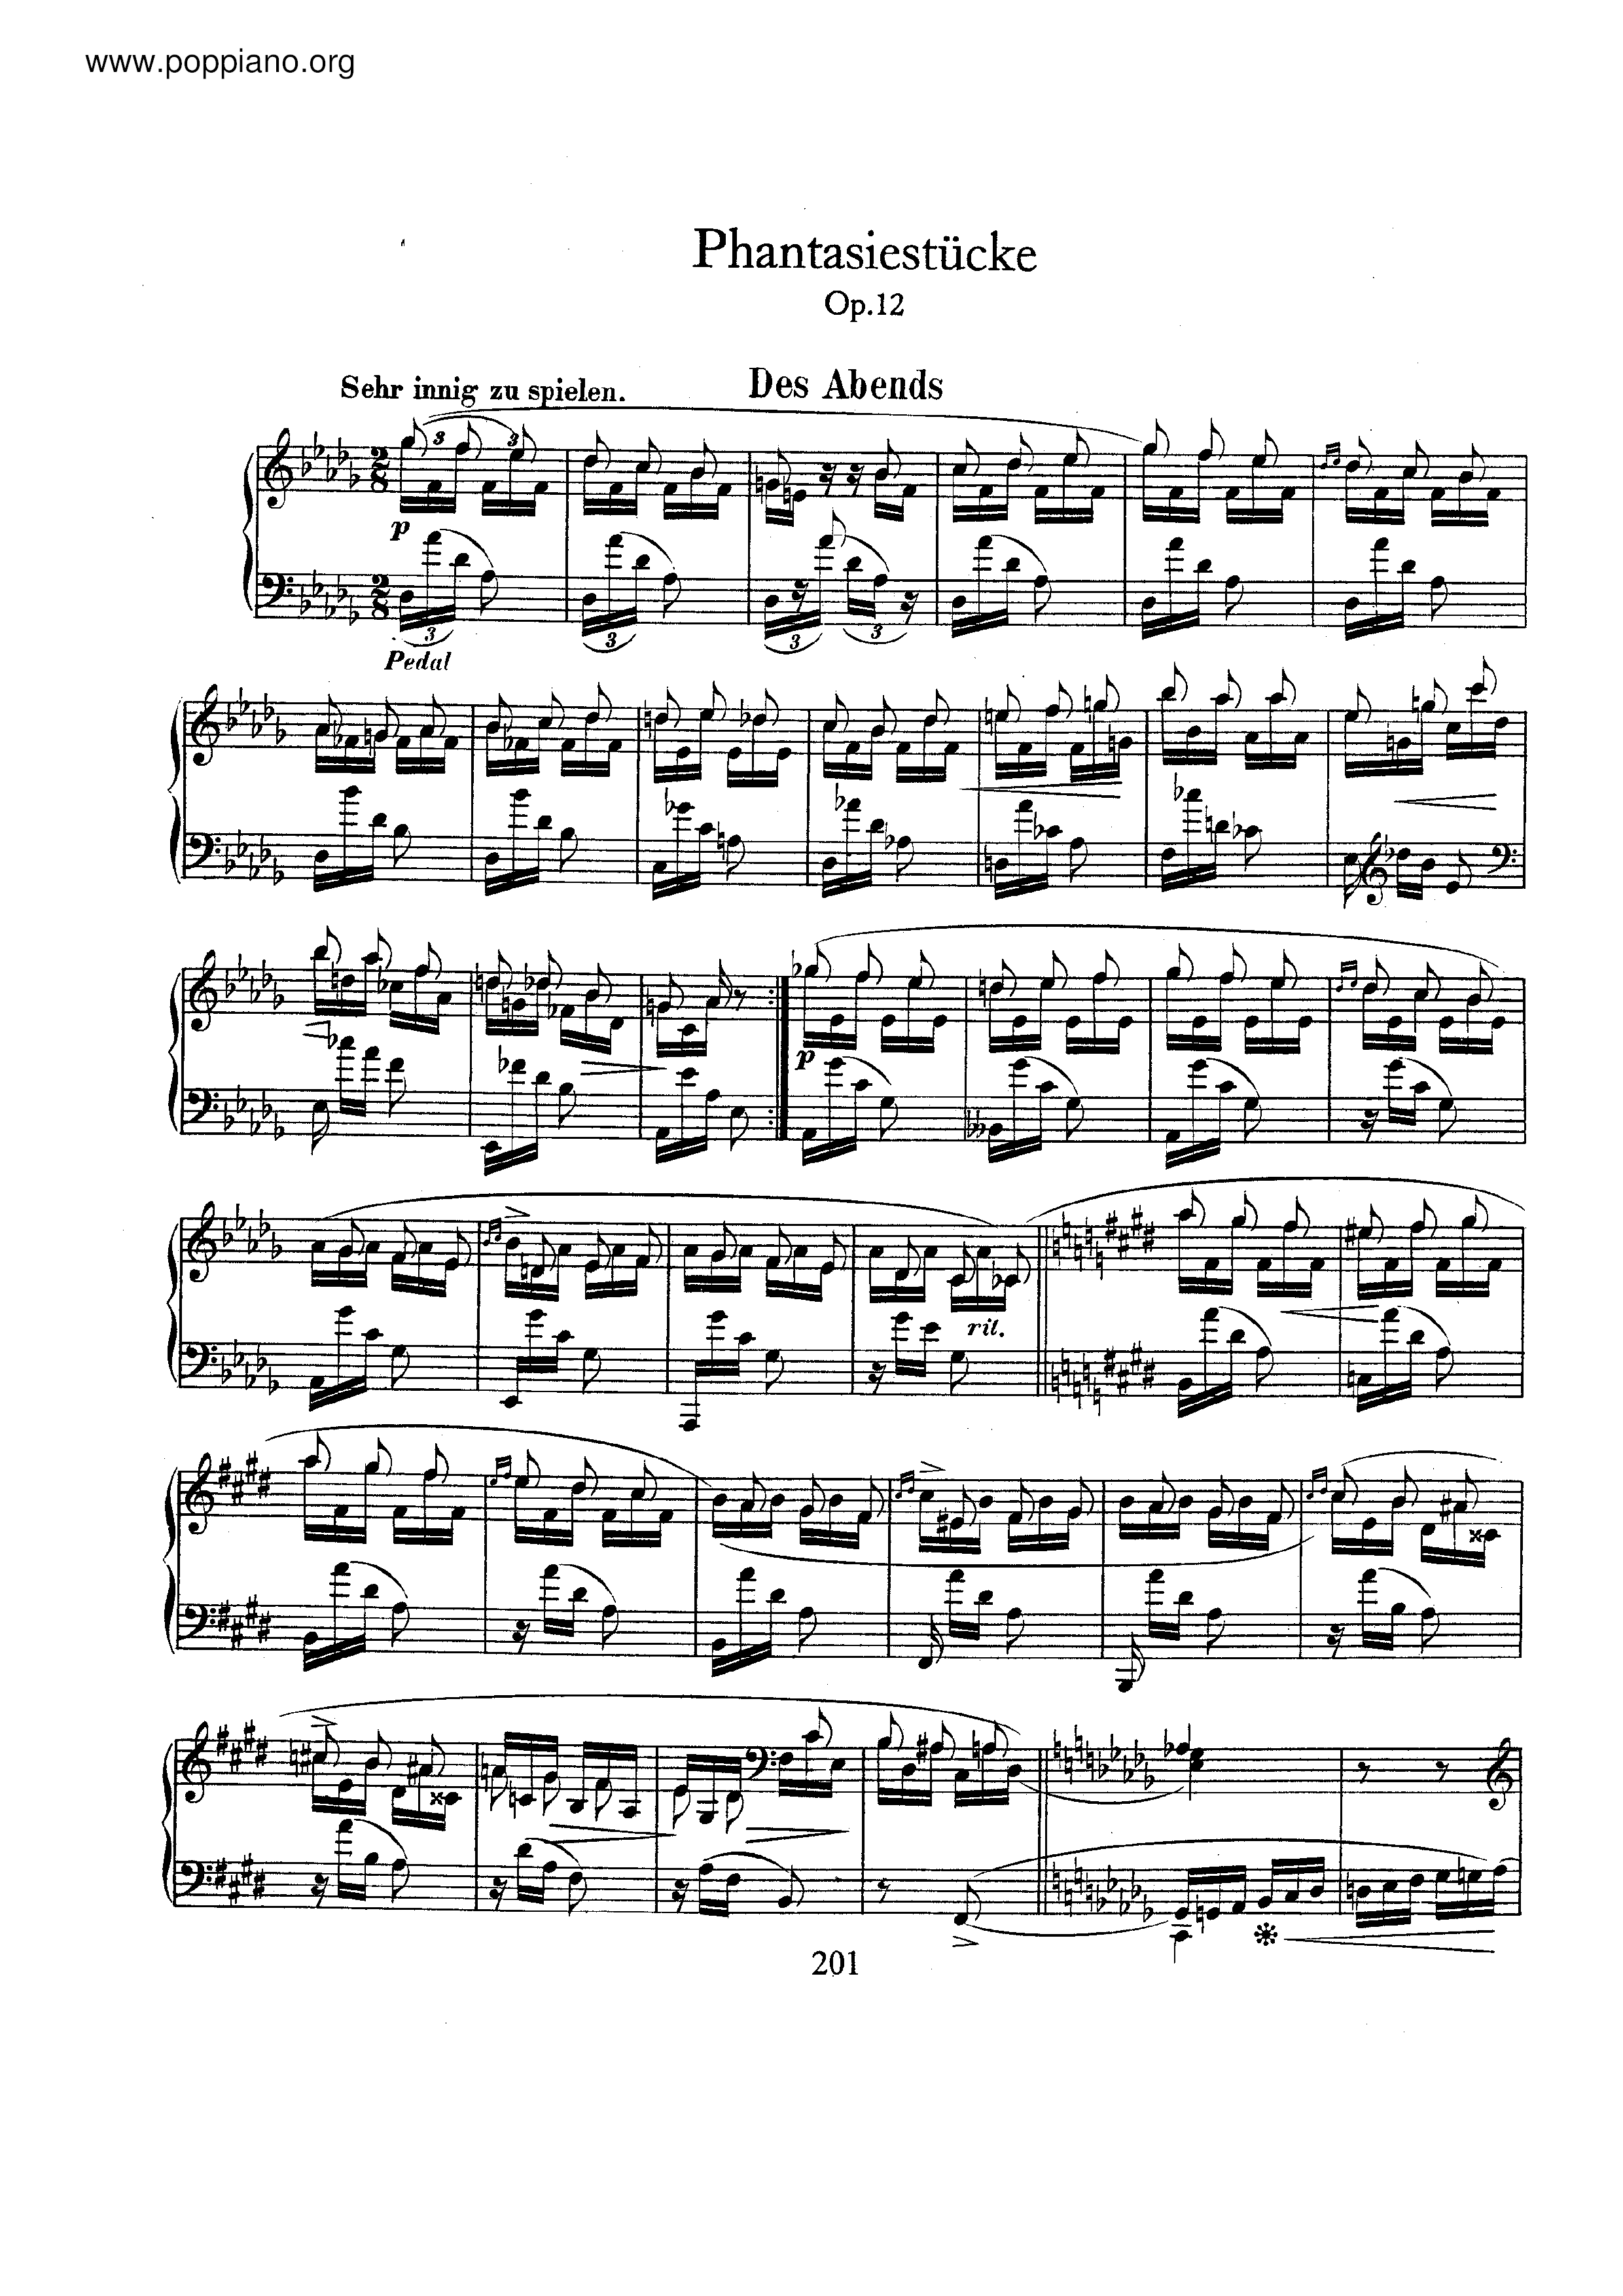 Fantasiestucke, Op.12 Score